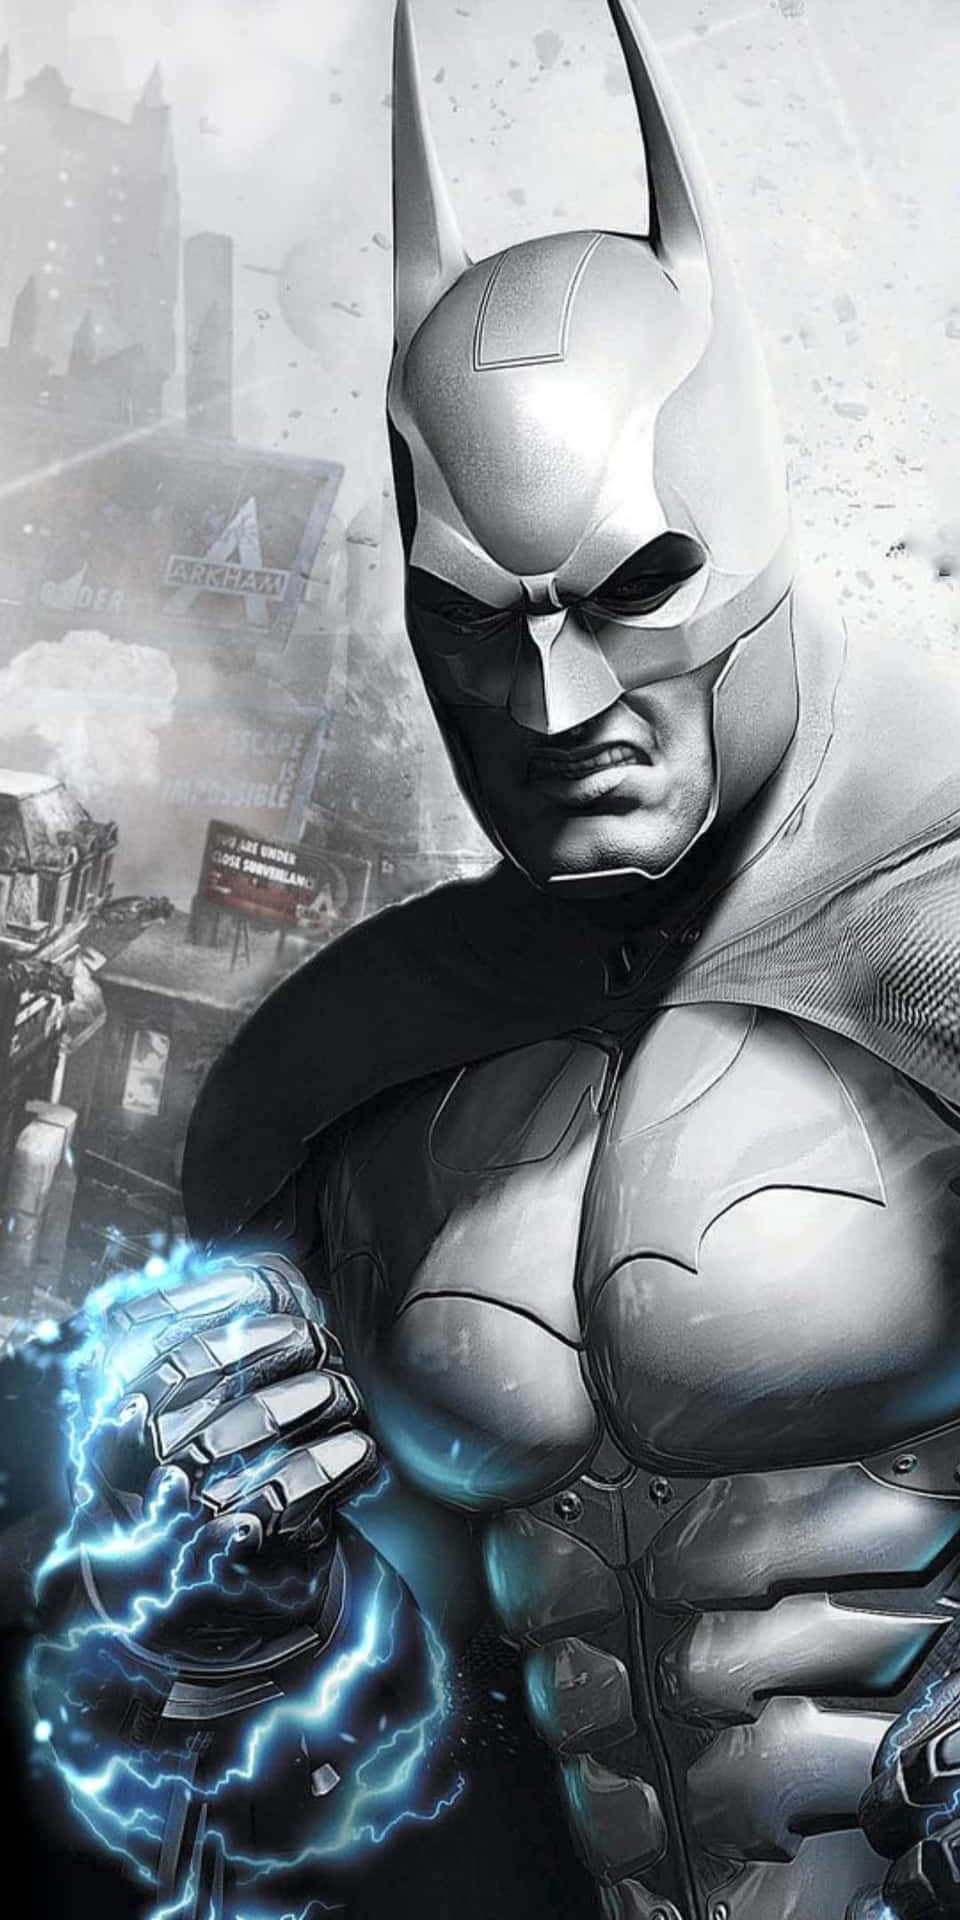 BATMAN: ARKHAM CITY Video Game Images